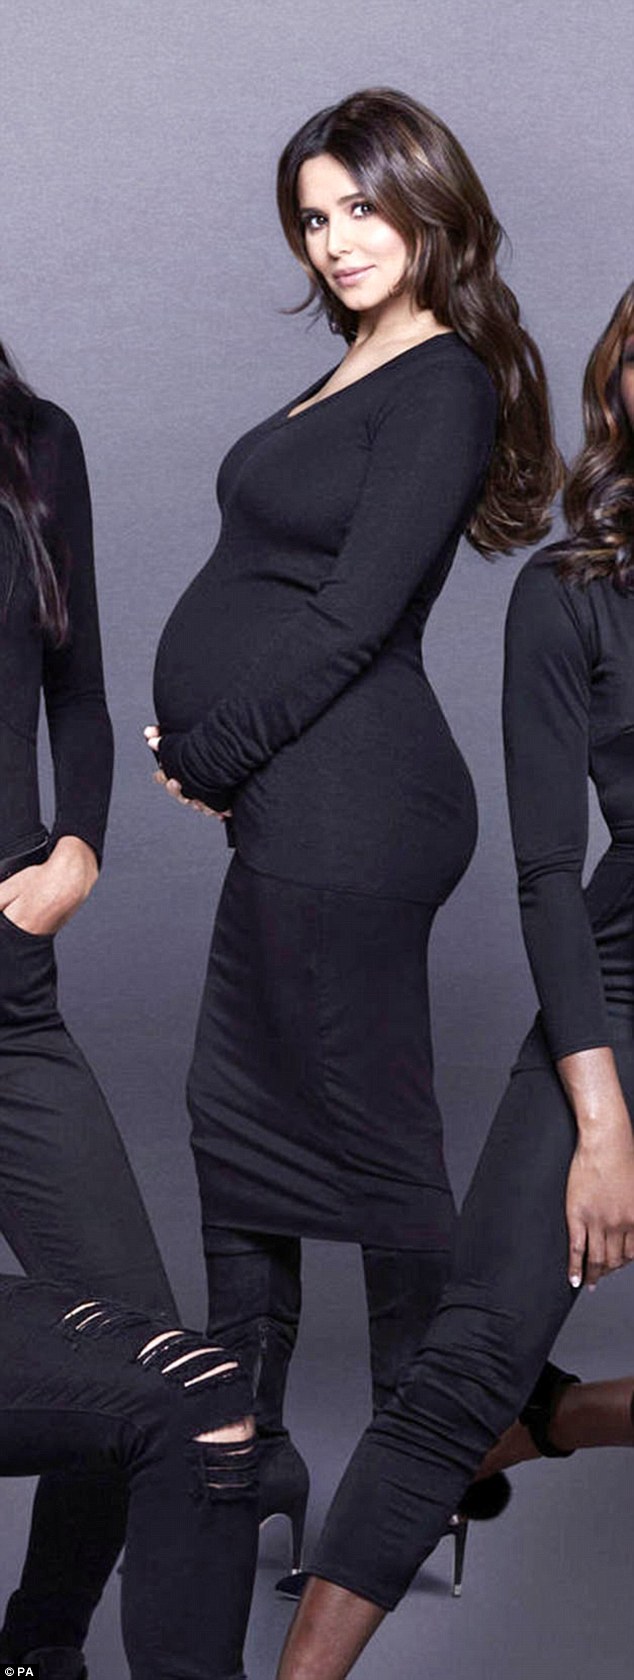 Cựu giám khảo XFactor Cheryl Cole xác nhận chuyện có thai khi lộ bụng bầu to lùm lùm - Ảnh 1.